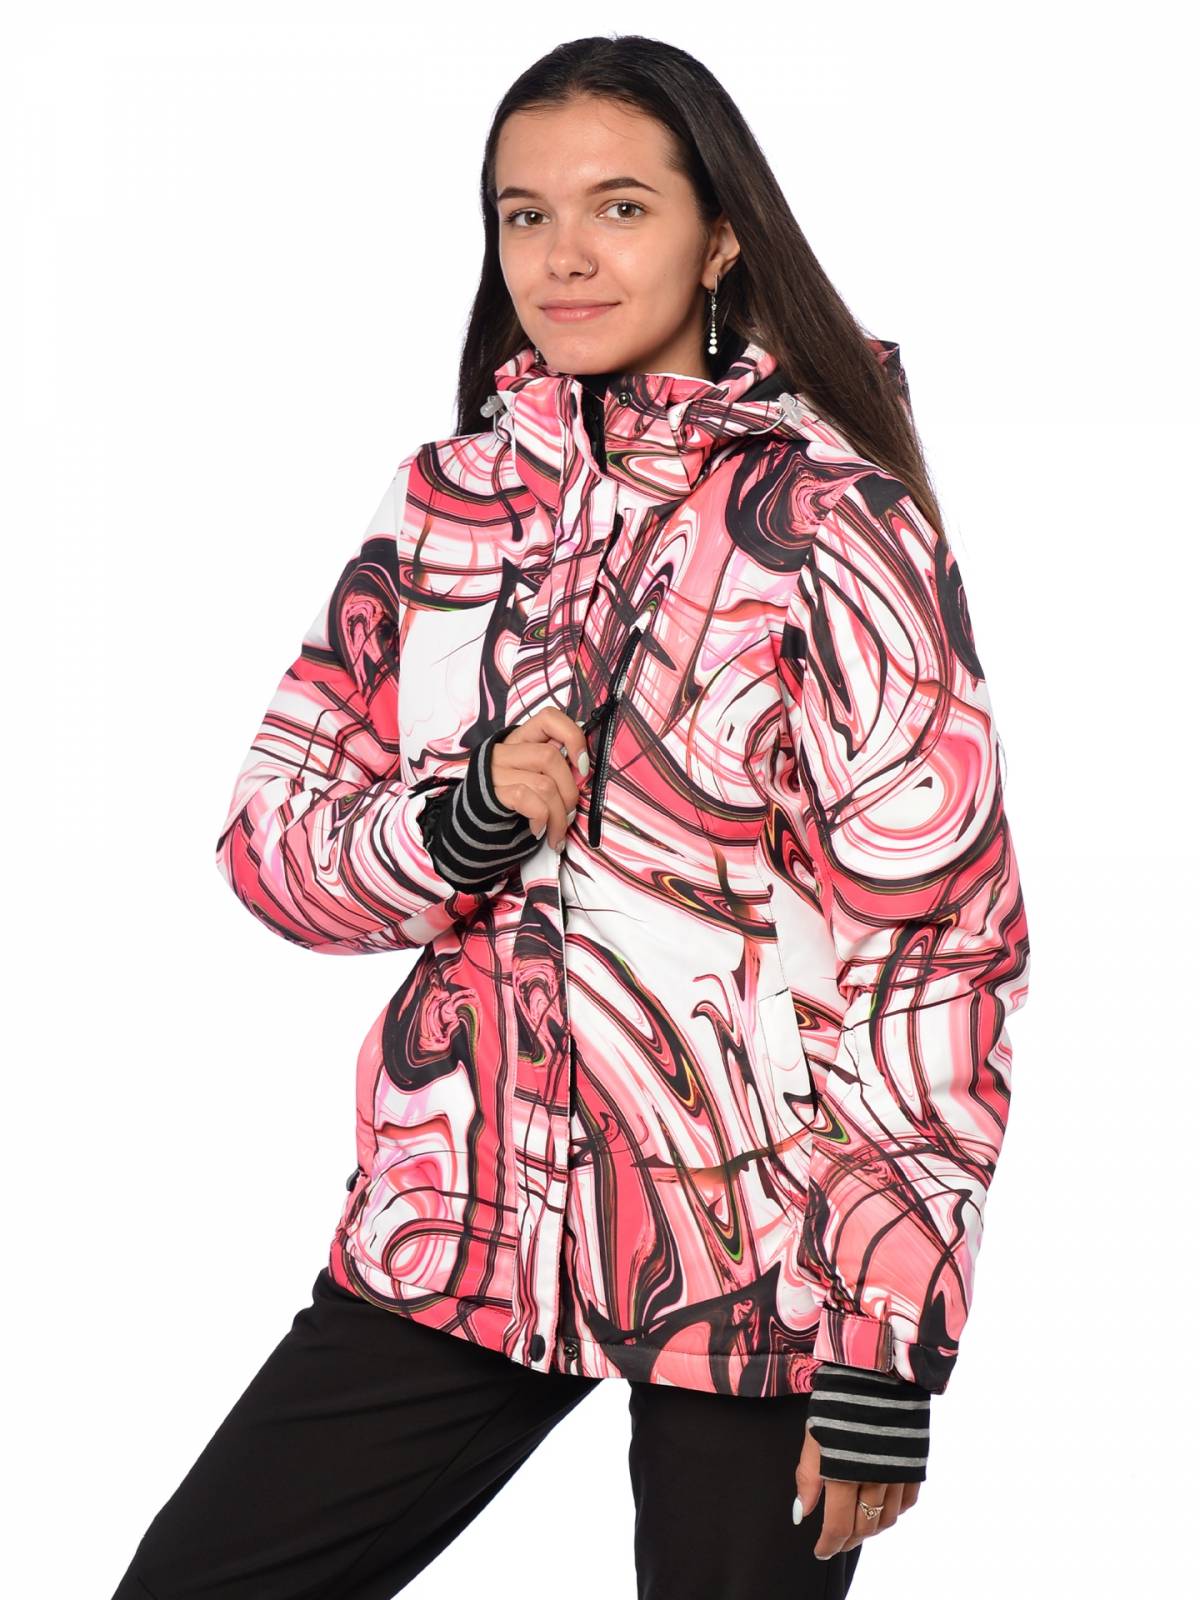 Горнолыжная куртка женская FUN ROCKET 79768-К размер 42, розовый